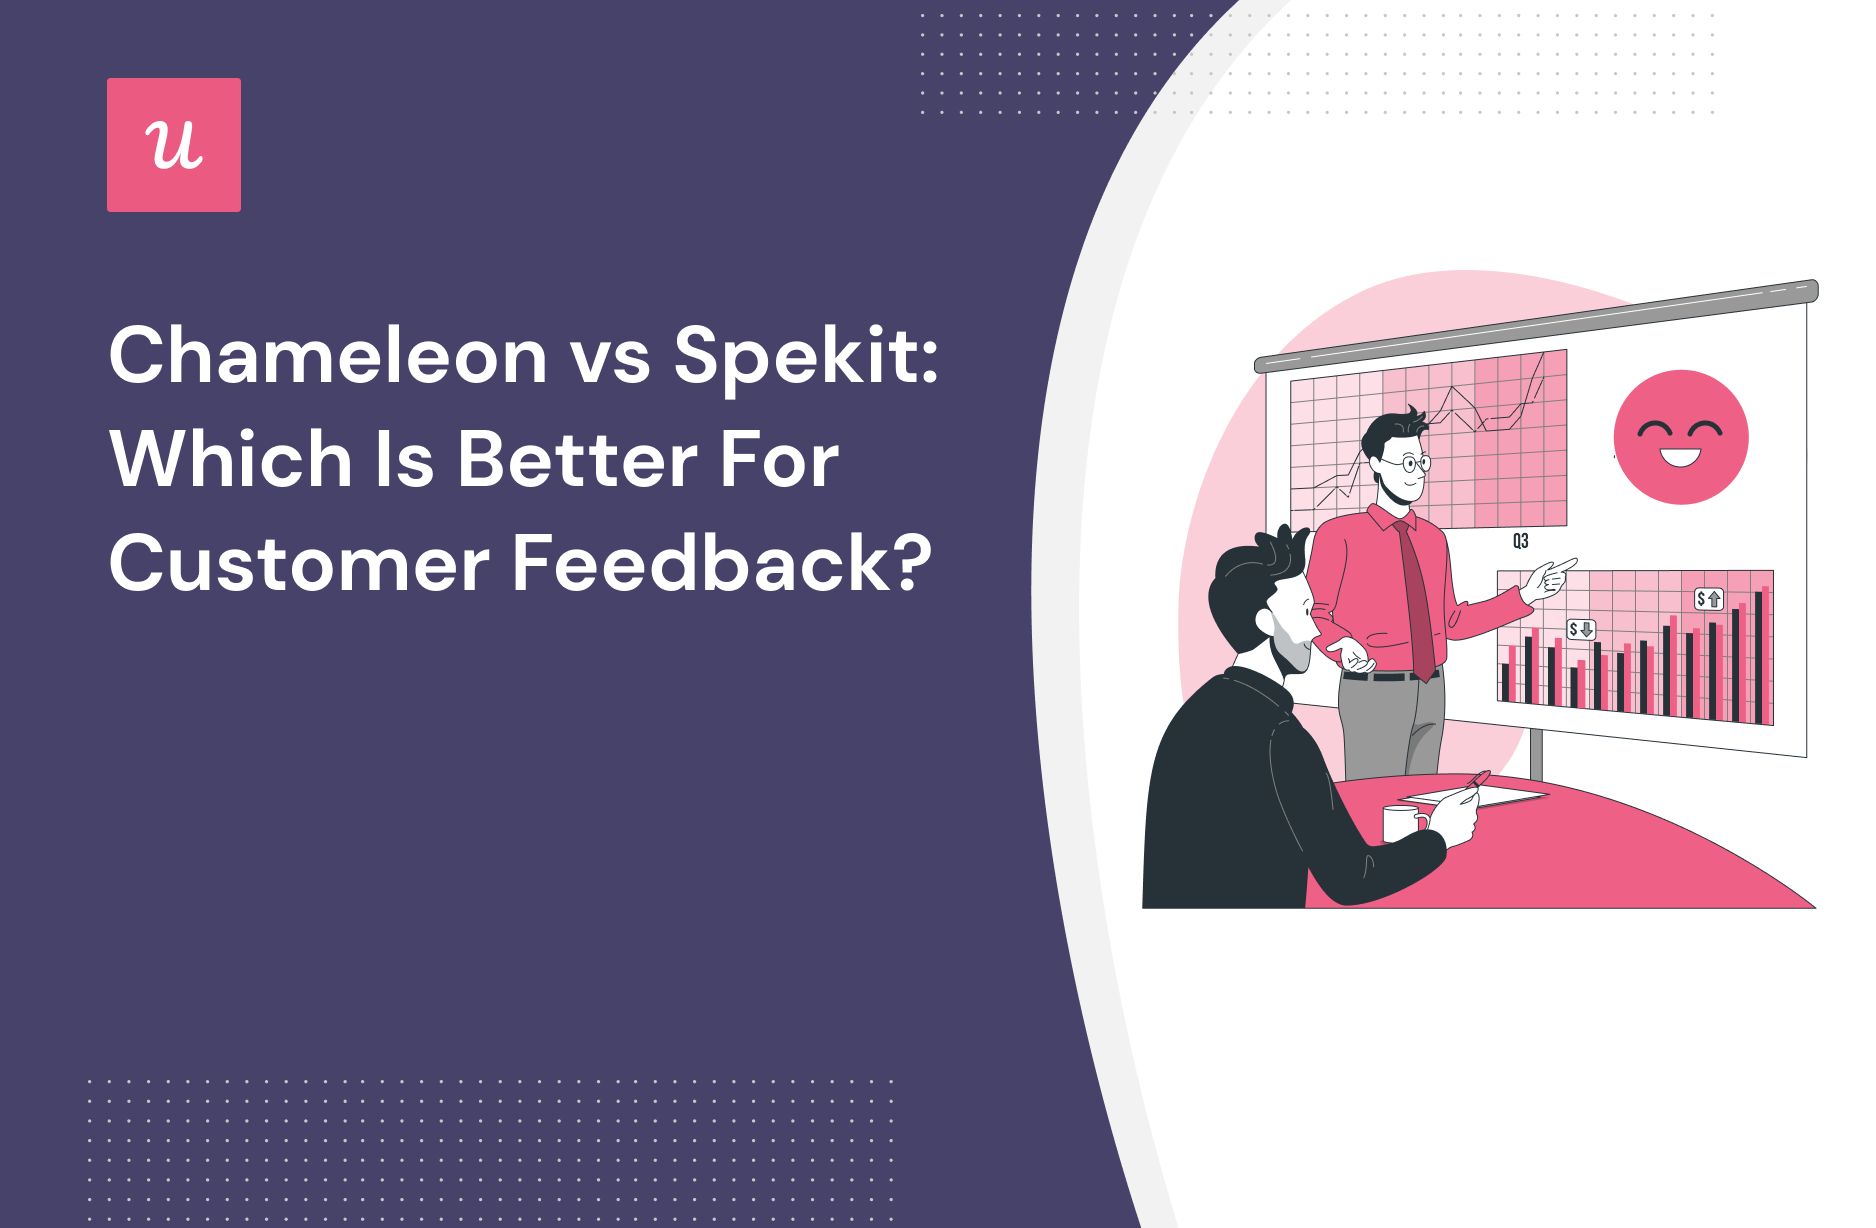 Chameleon vs Spekit: Which is Better for Customer Feedback?